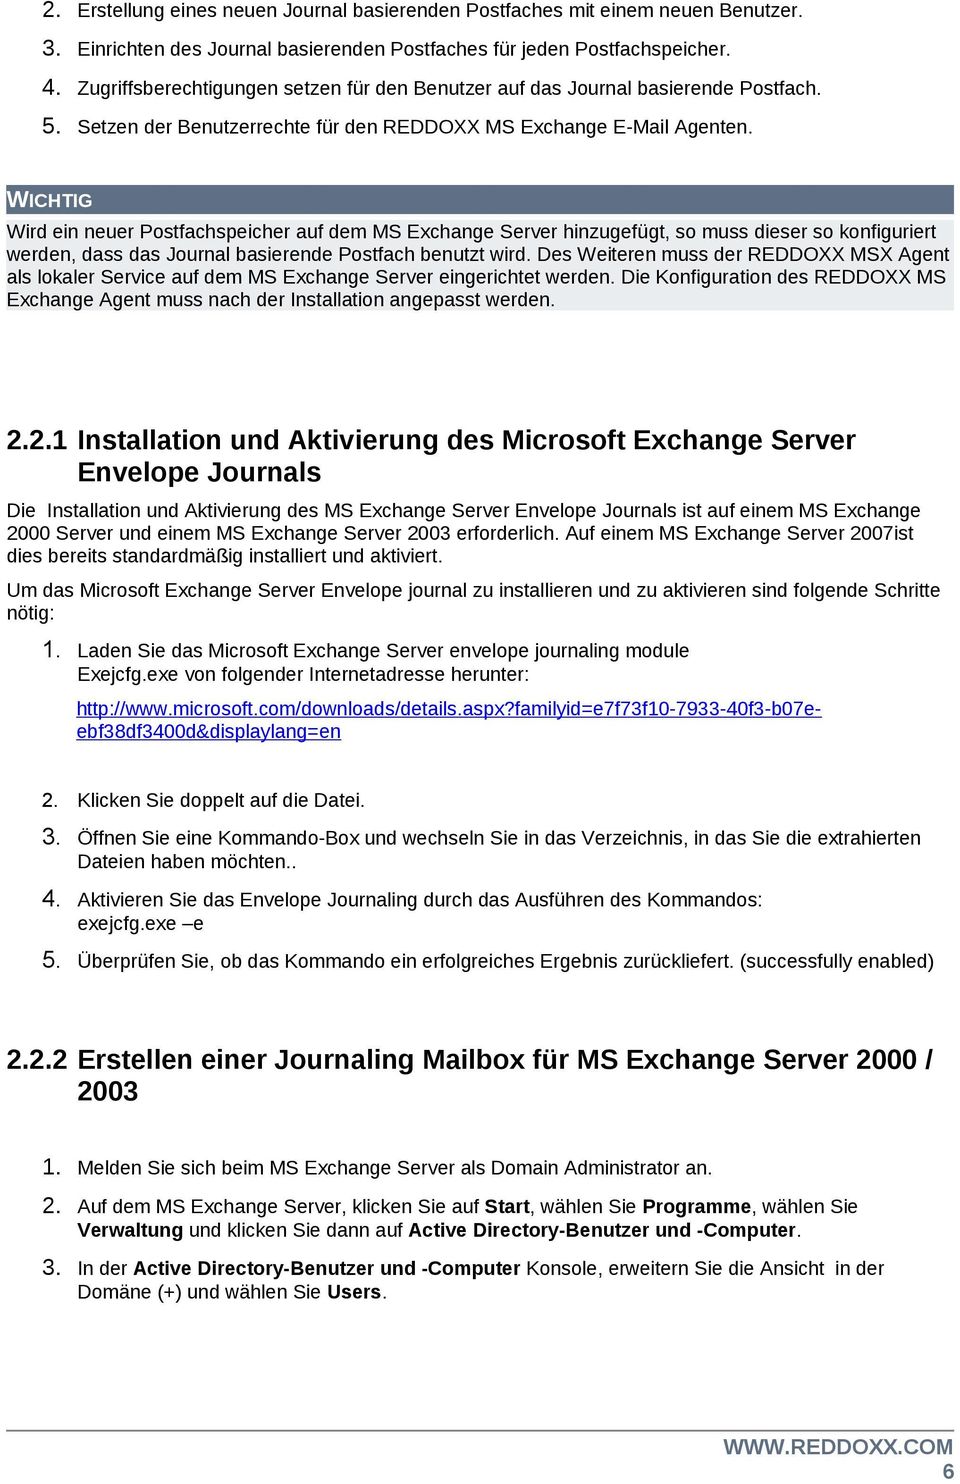 WICHTIG Wird ein neuer Postfachspeicher auf dem MS Exchange Server hinzugefügt, so muss dieser so konfiguriert werden, dass das Journal basierende Postfach benutzt wird.